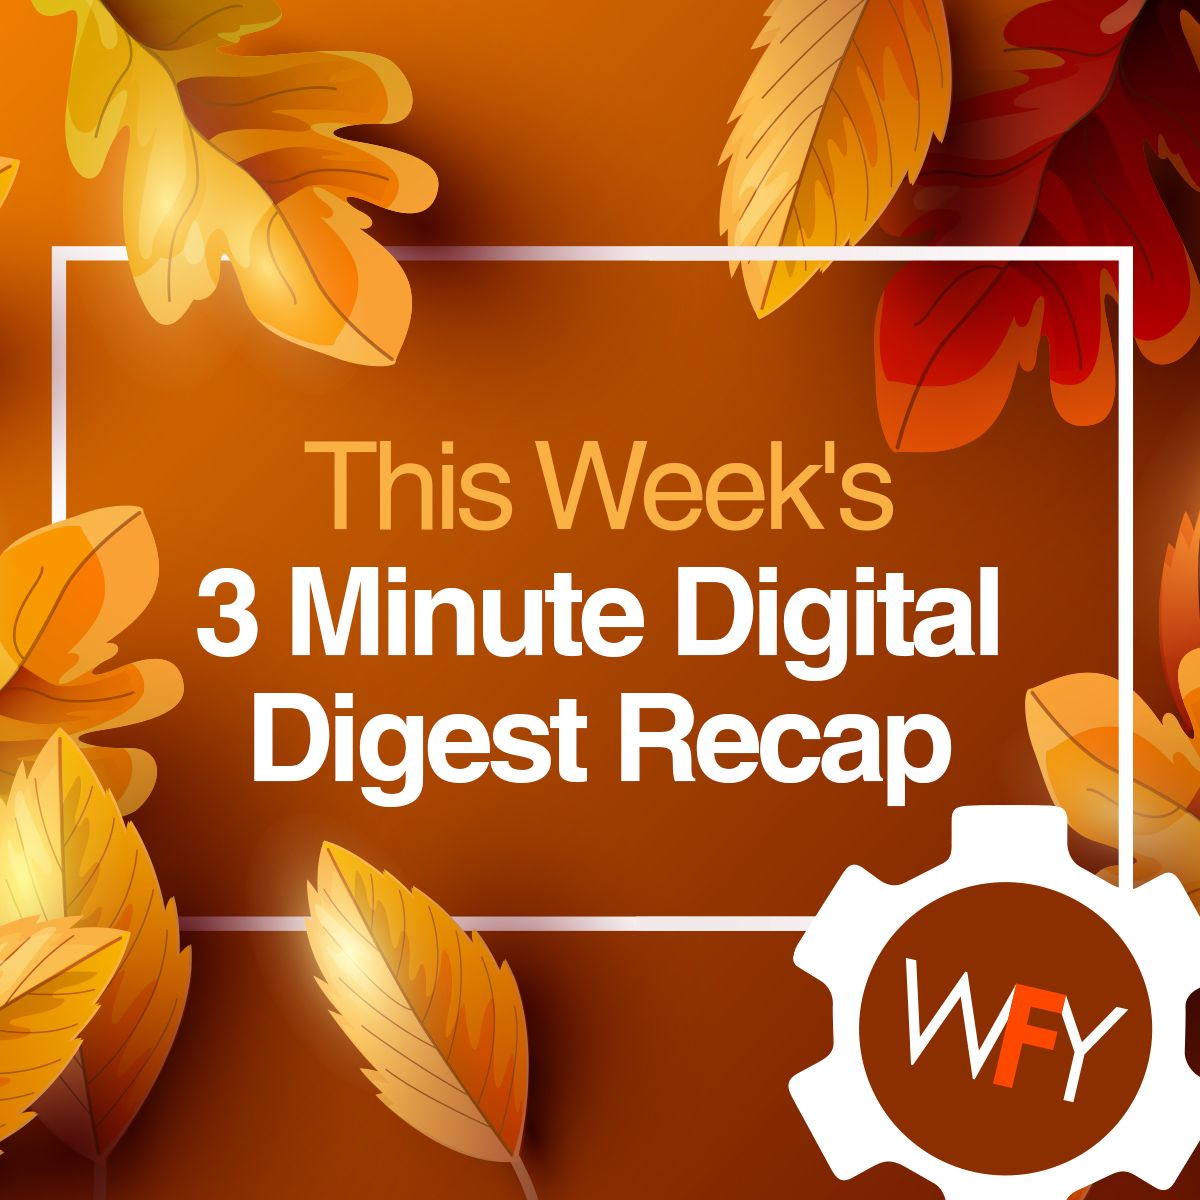 This Week's 3 Minute Digital Digest Recap